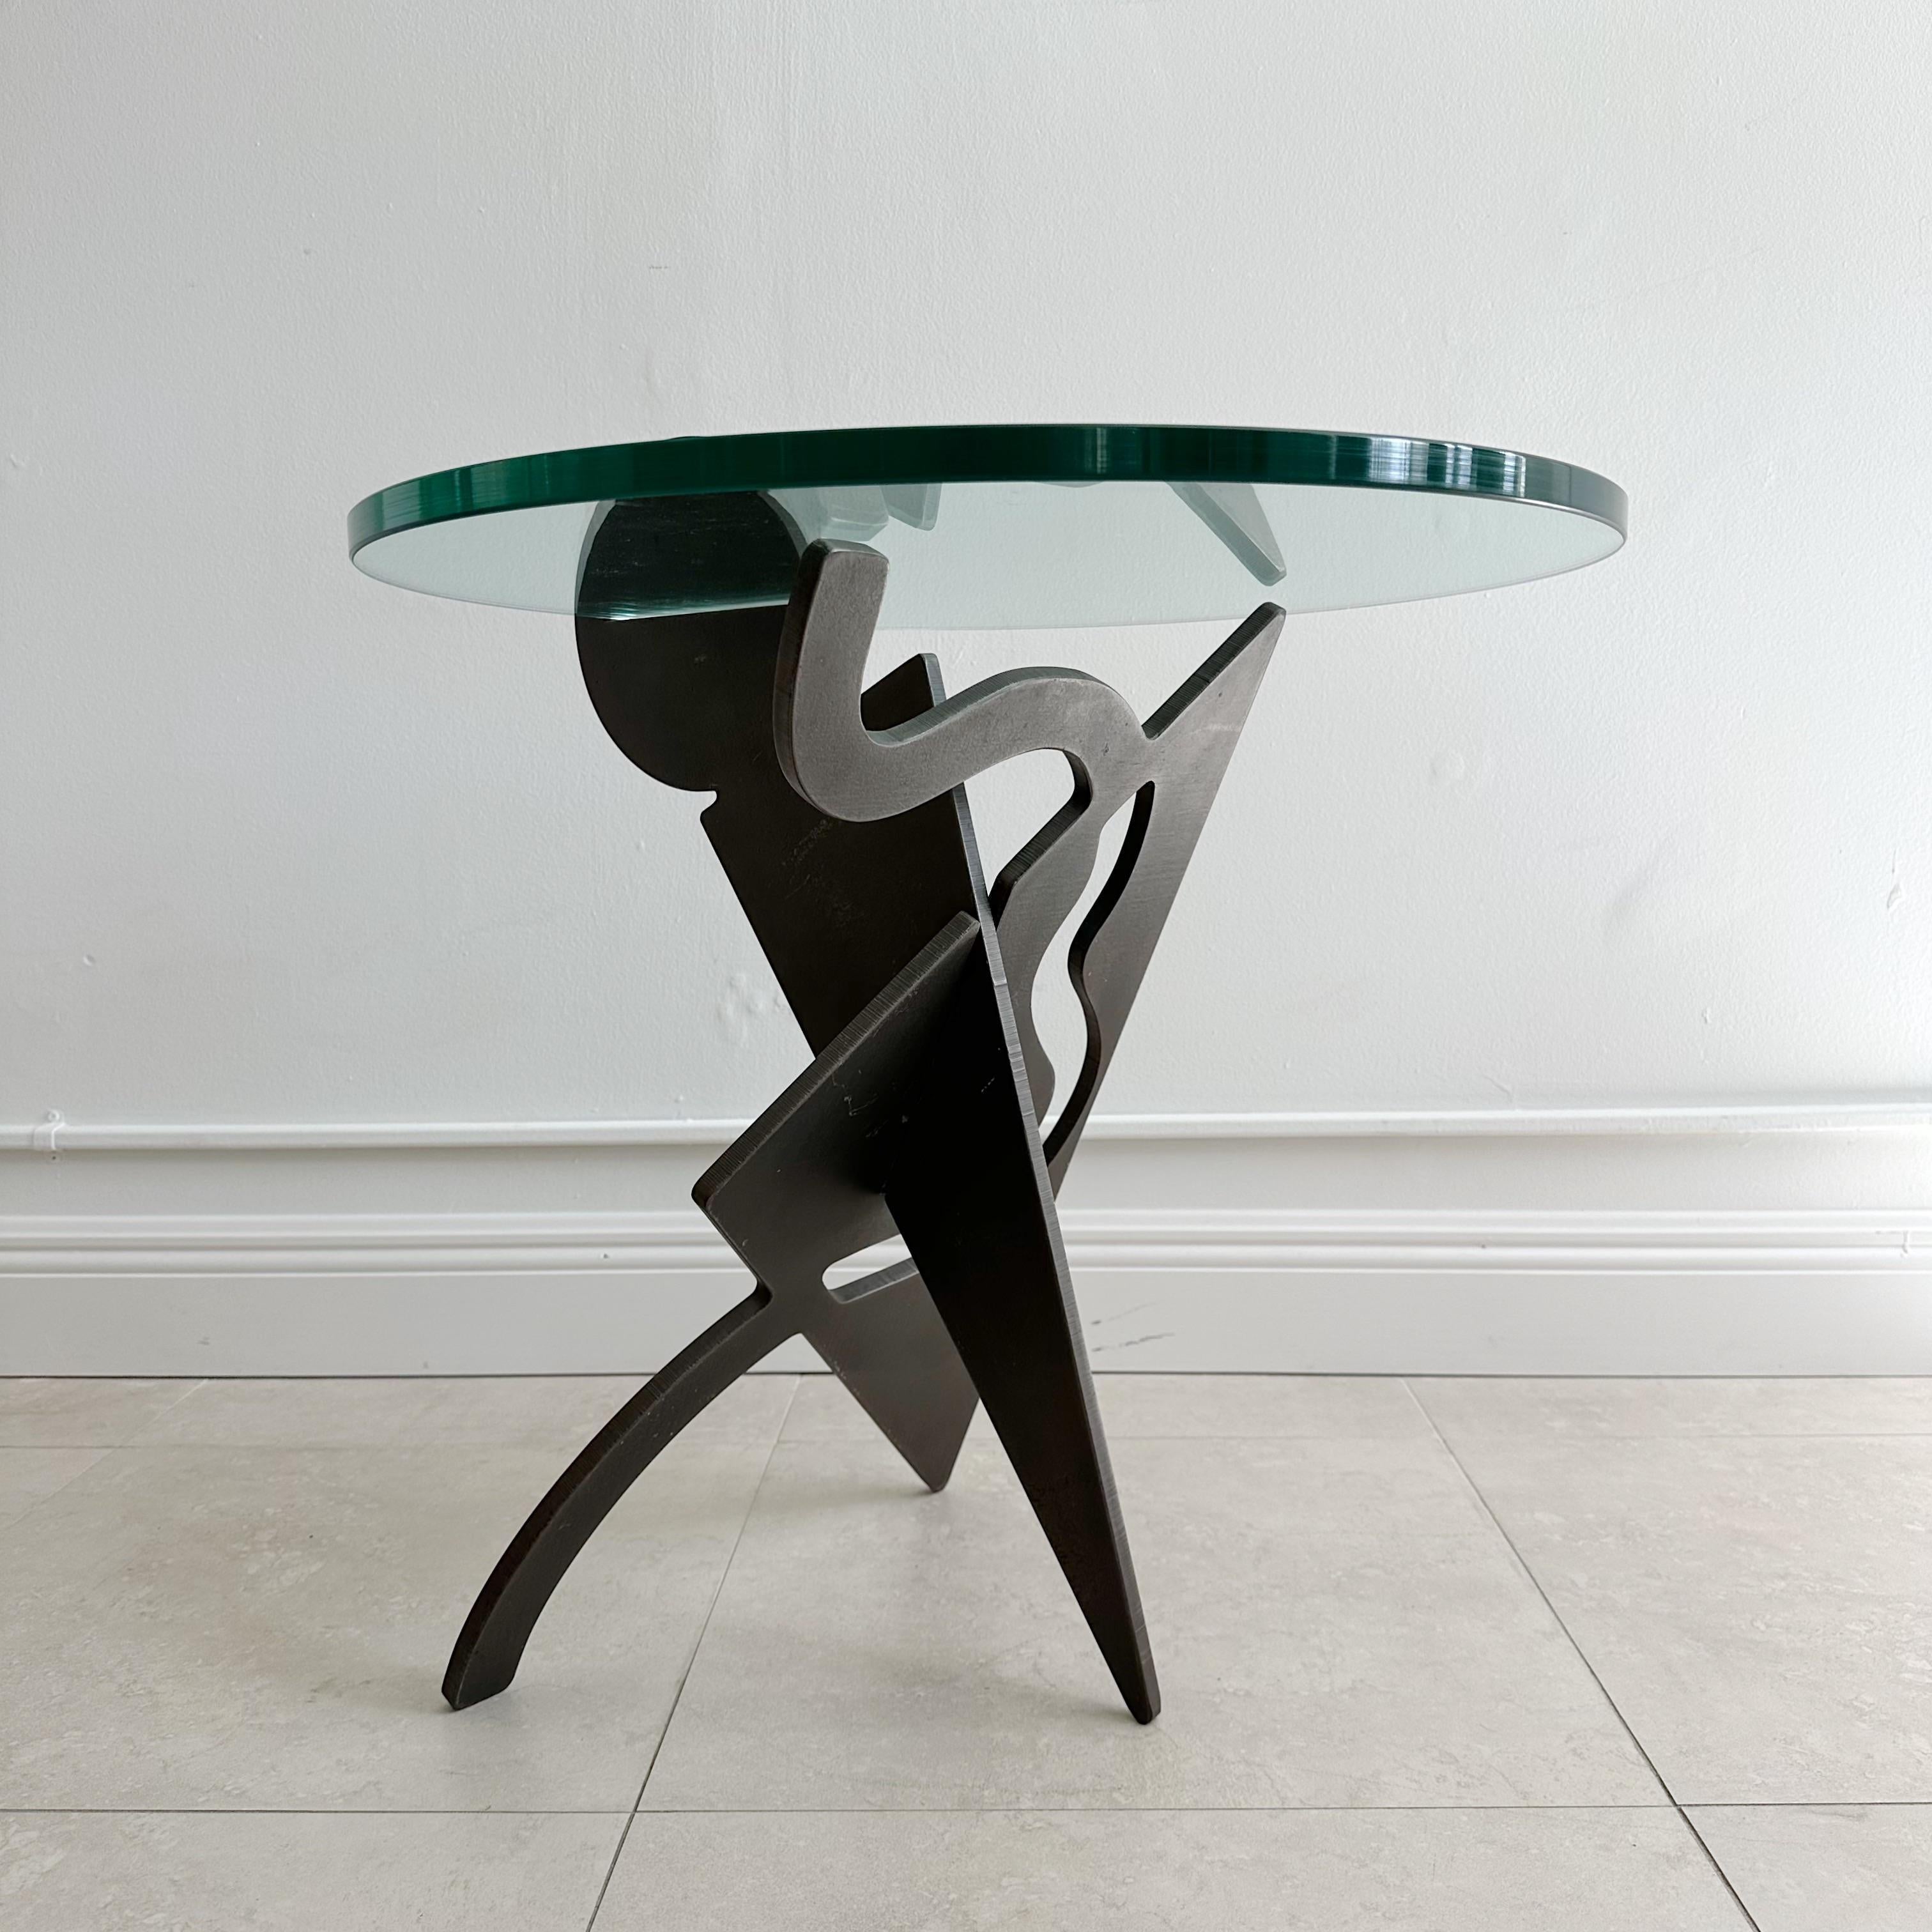 Pucci De Rossi
(1947-2013)
Table d'appoint composée de deux panneaux d'acier de ⅝